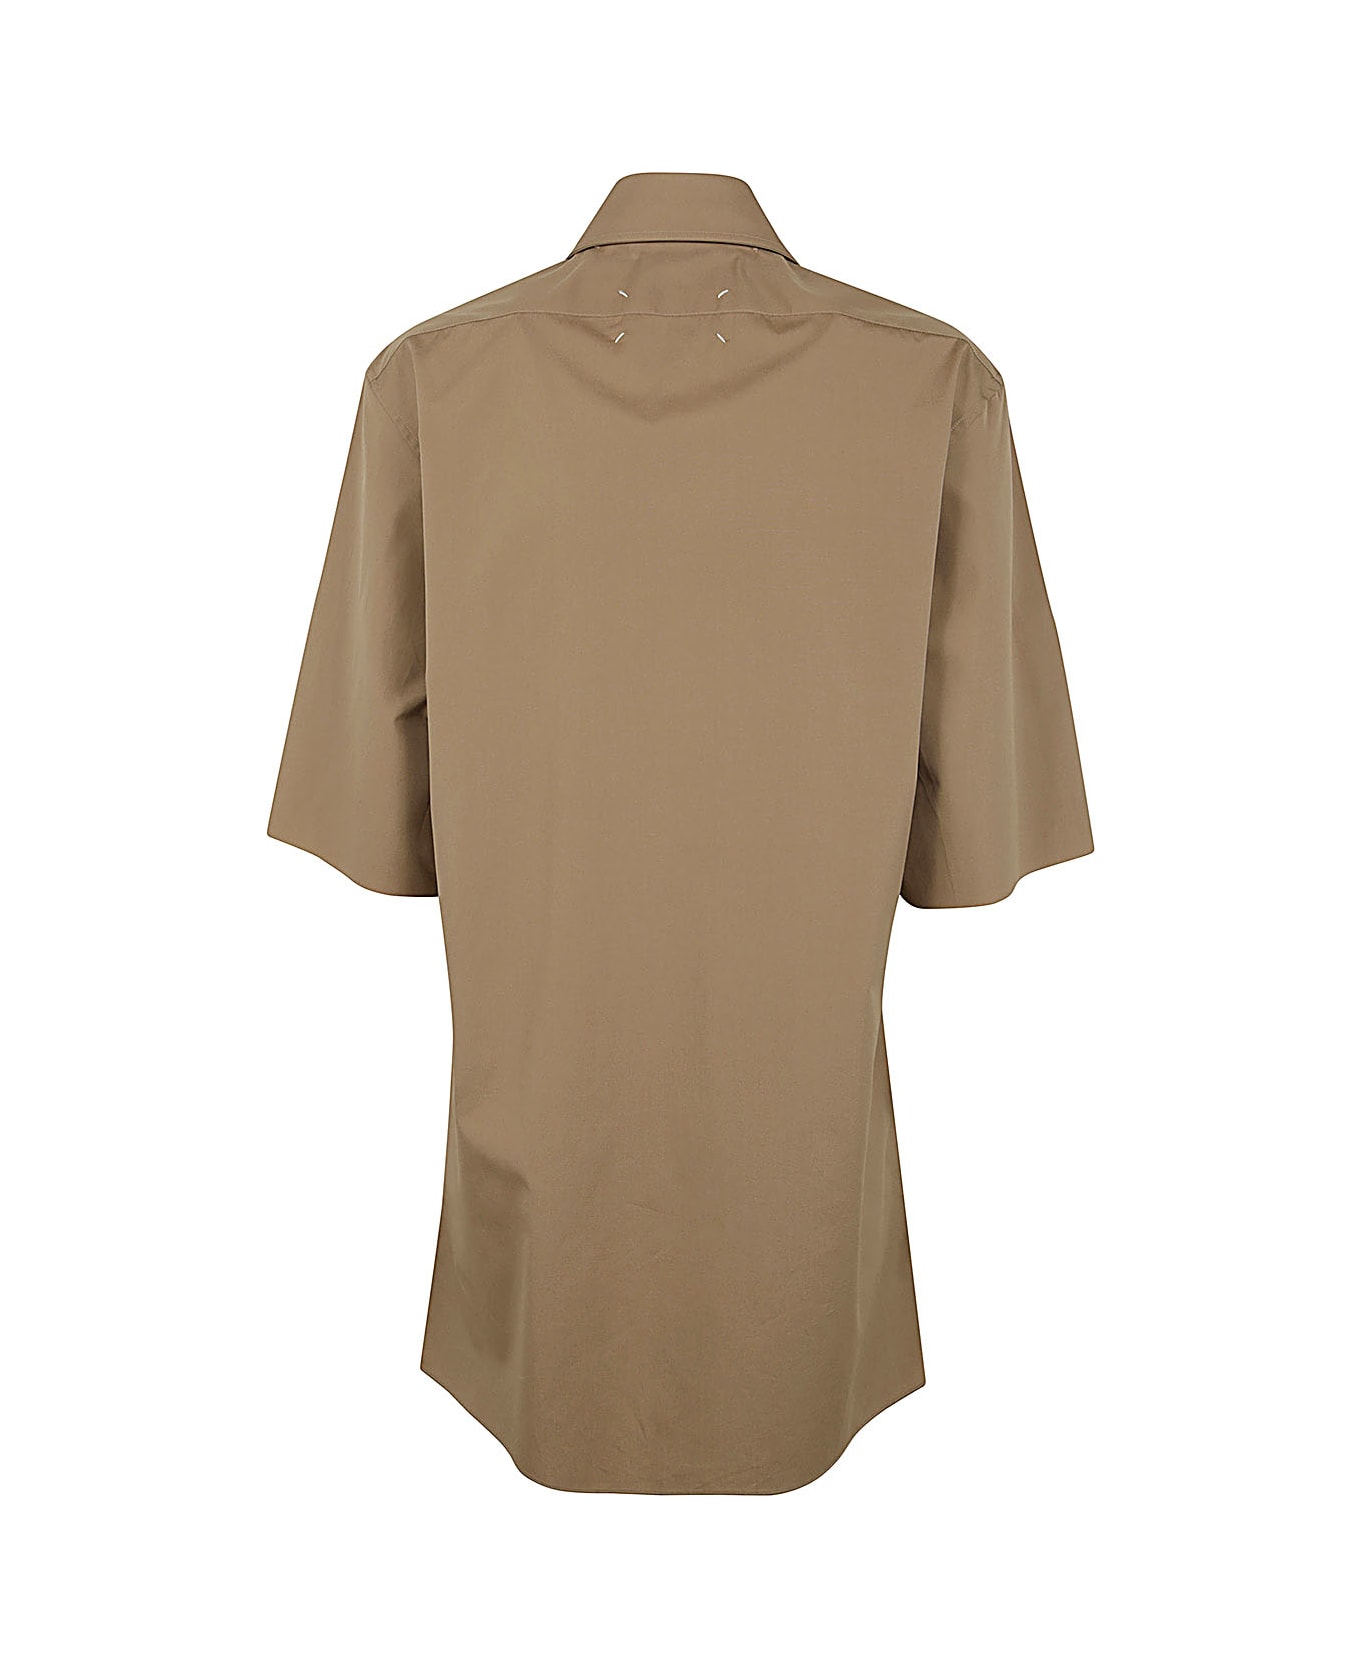 Maison Margiela Short Sleeves Shirt - Camel